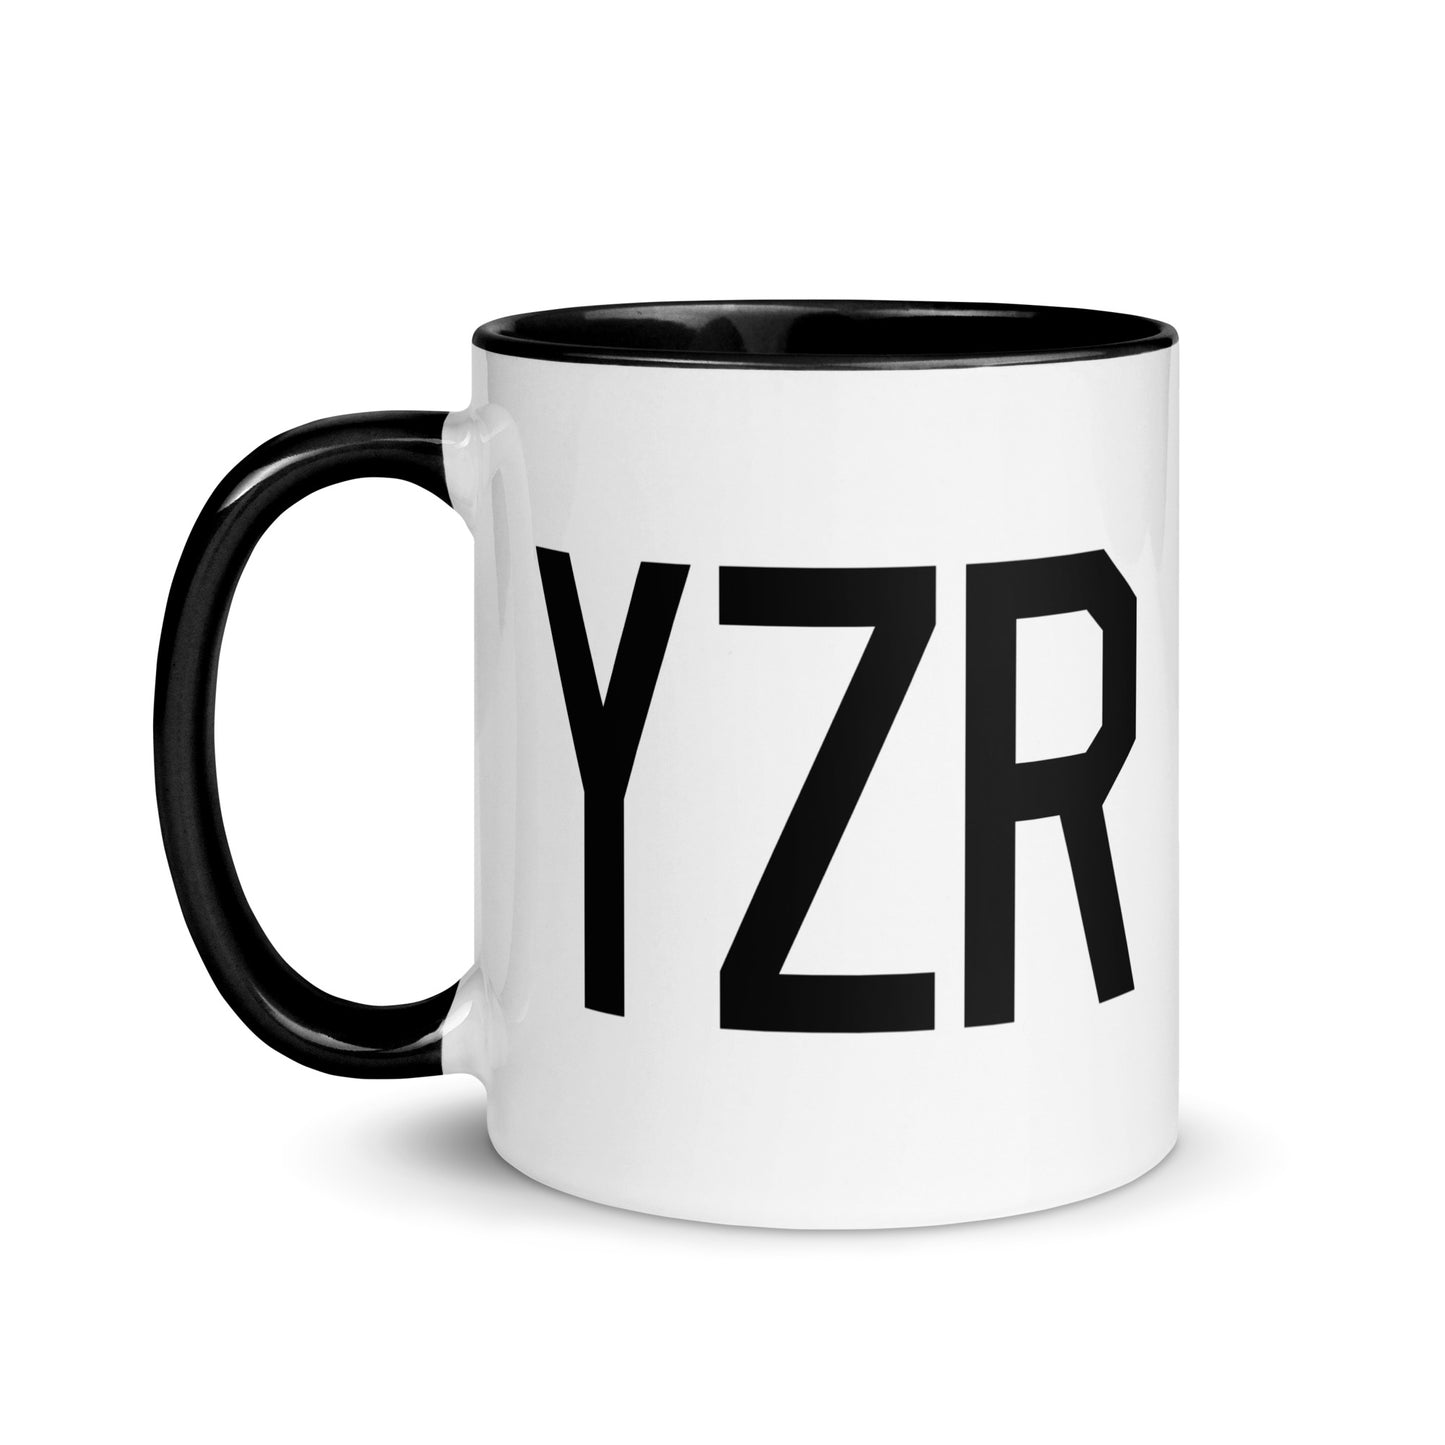 Aviation-Theme Coffee Mug - Black • YZR Sarnia • YHM Designs - Image 03